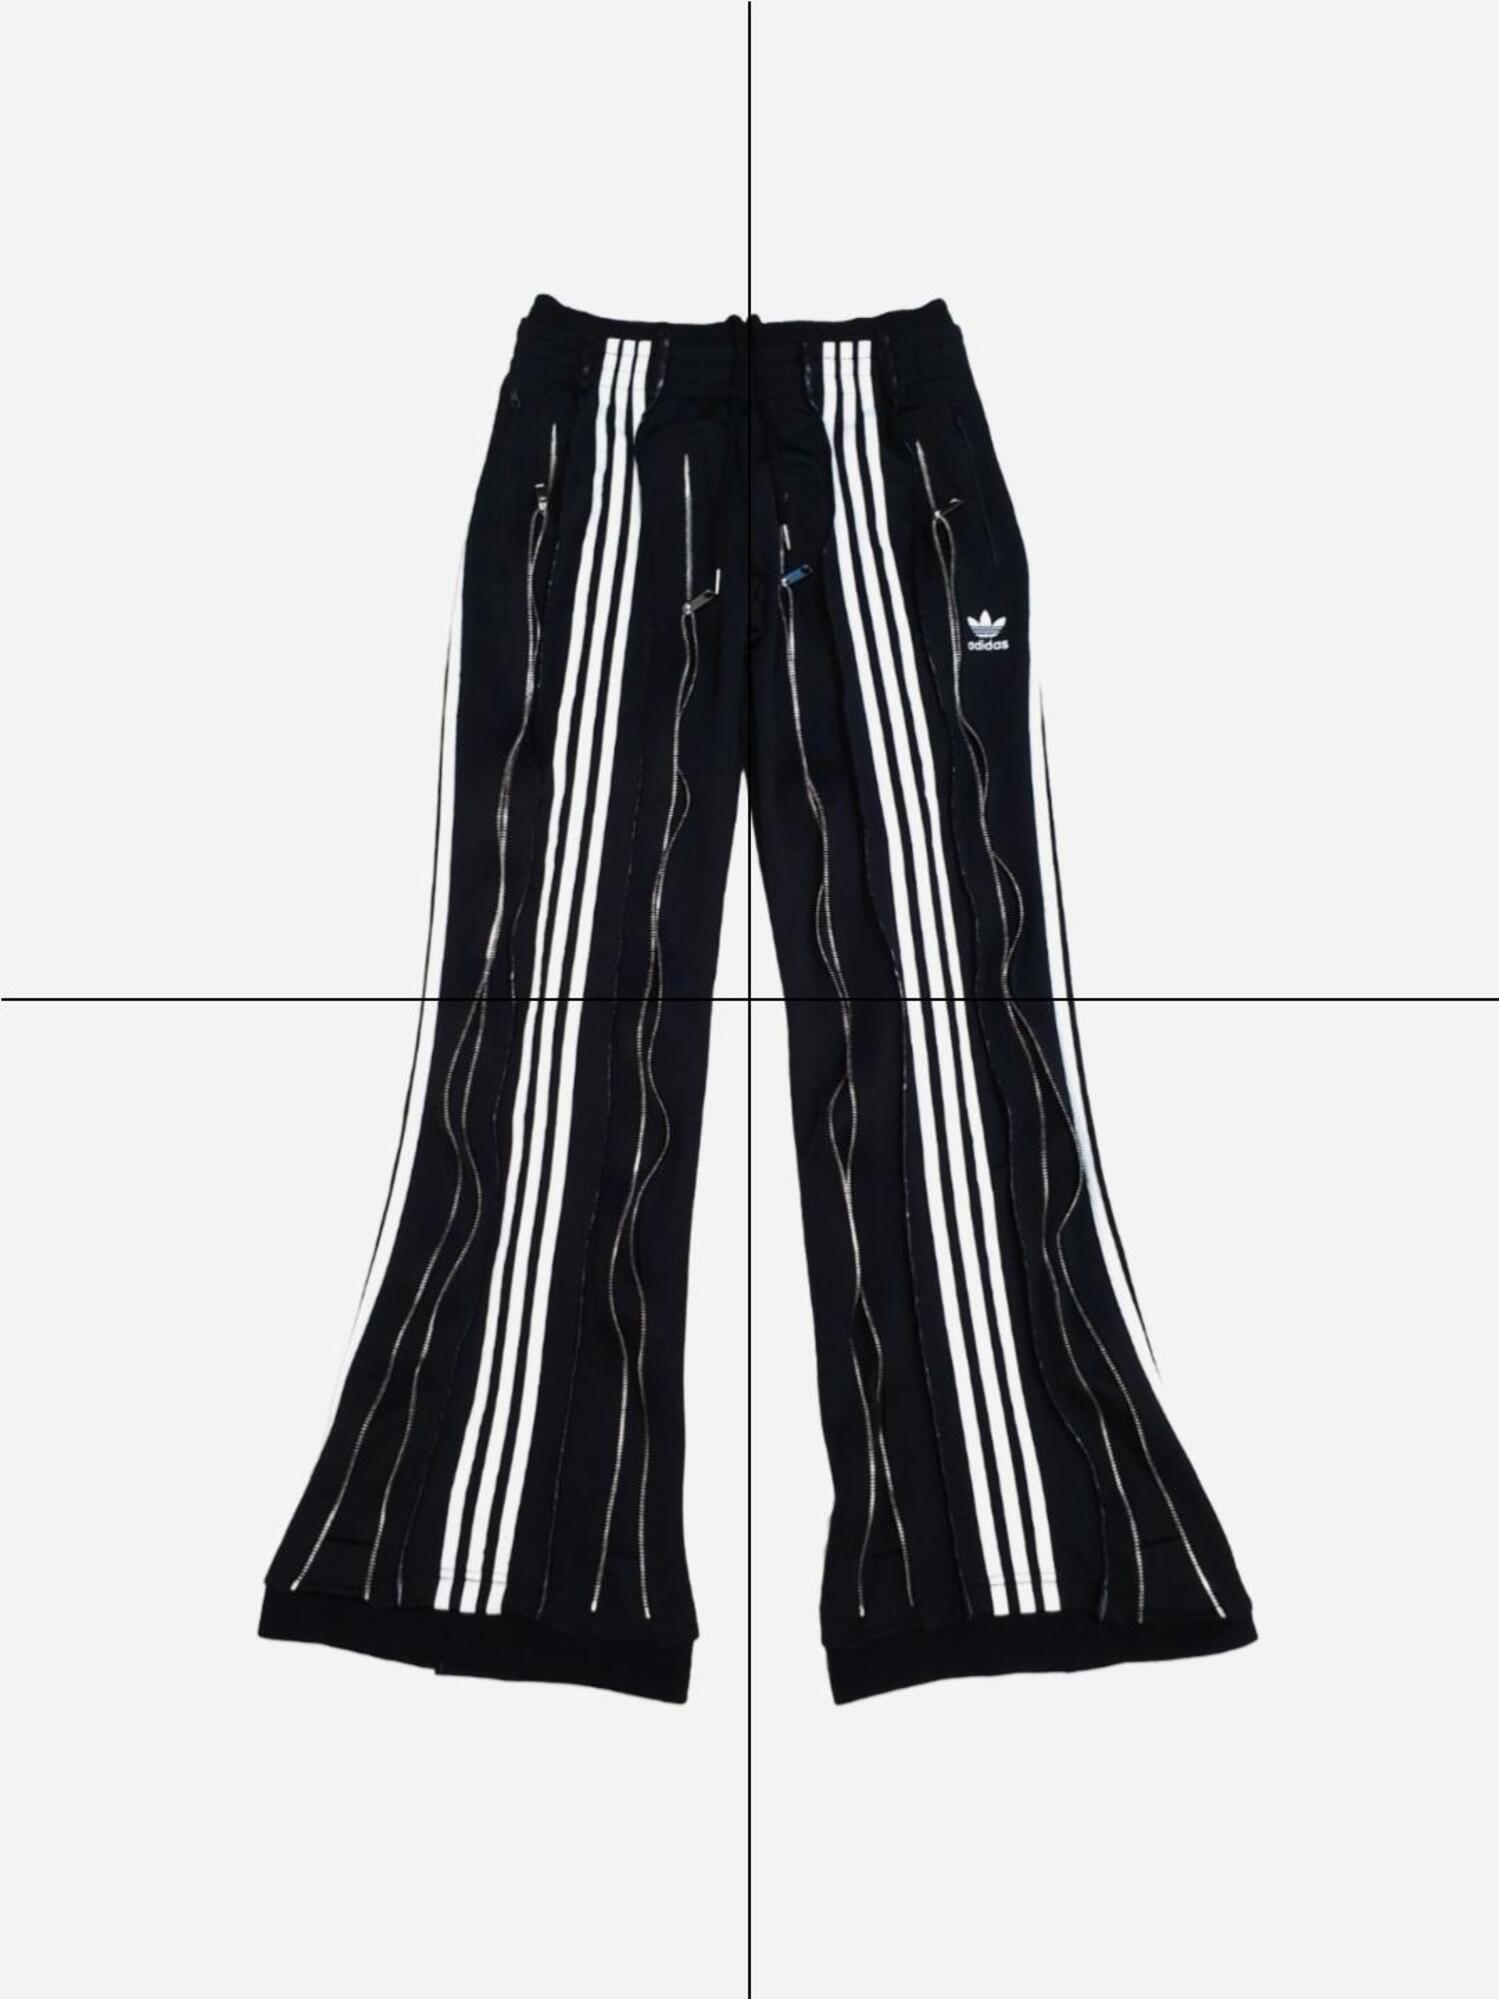 Adidas remake pants no.20